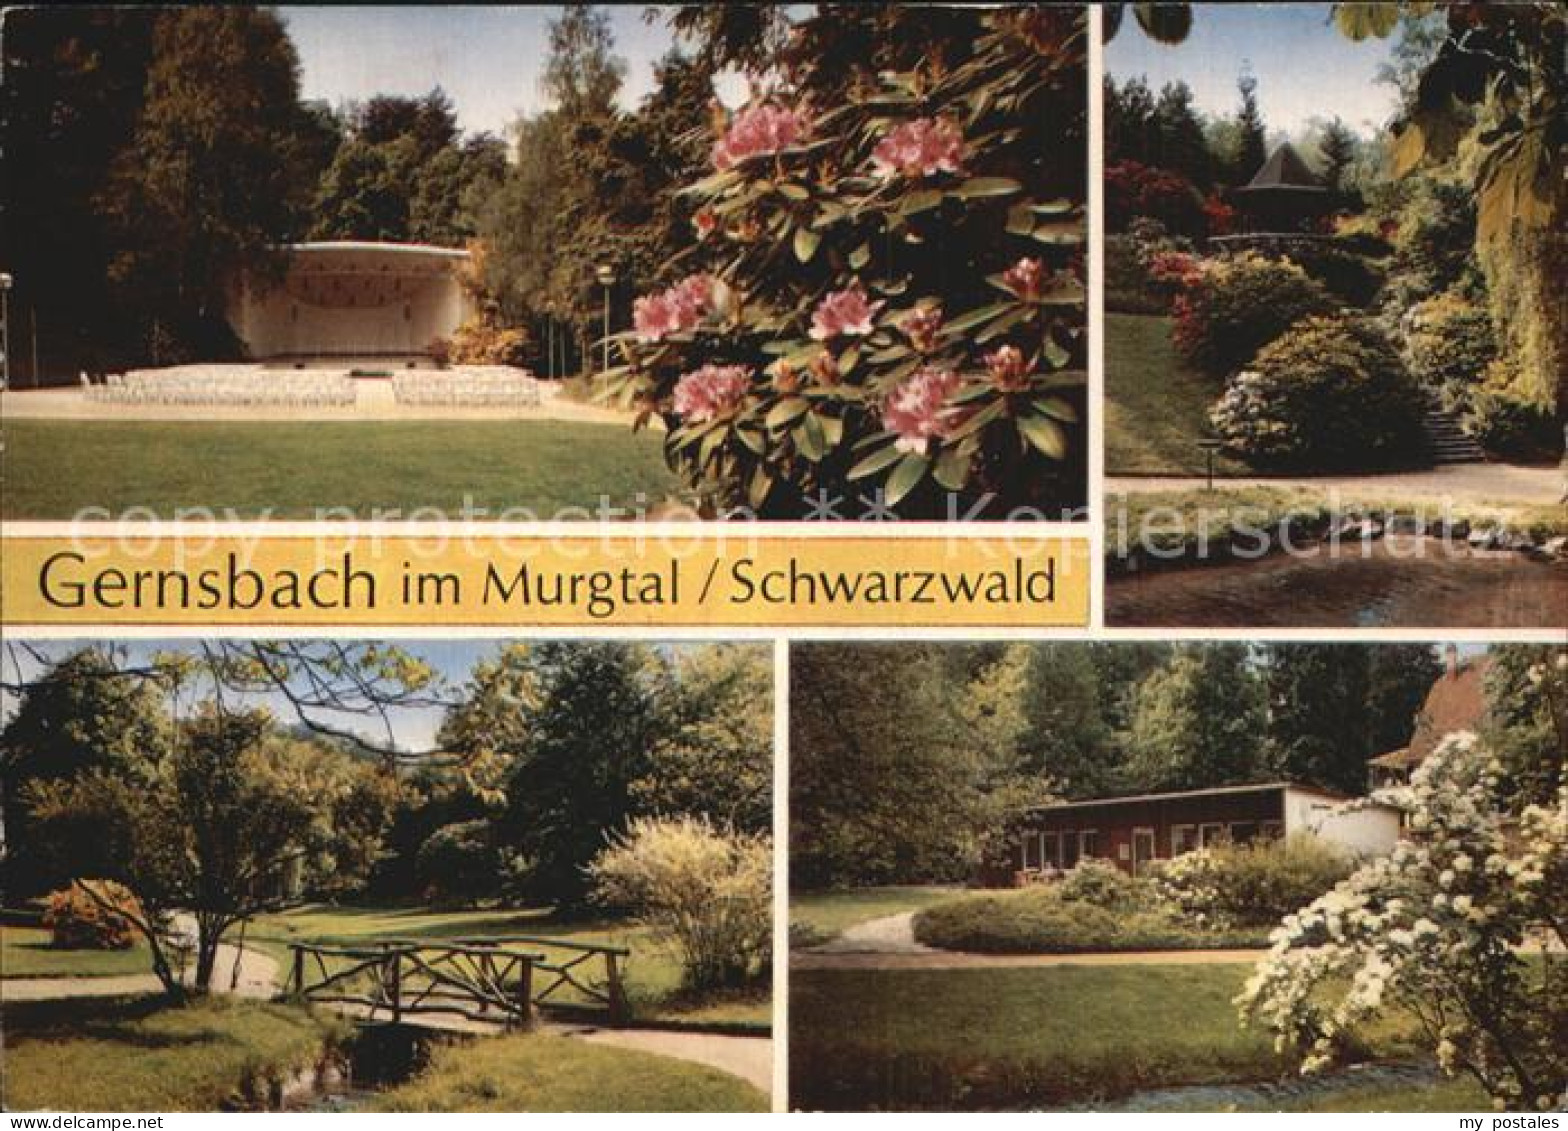 72543639 Gernsbach Konzertpavillon Kurpark Weiher Bungalow Gernsbach - Gernsbach